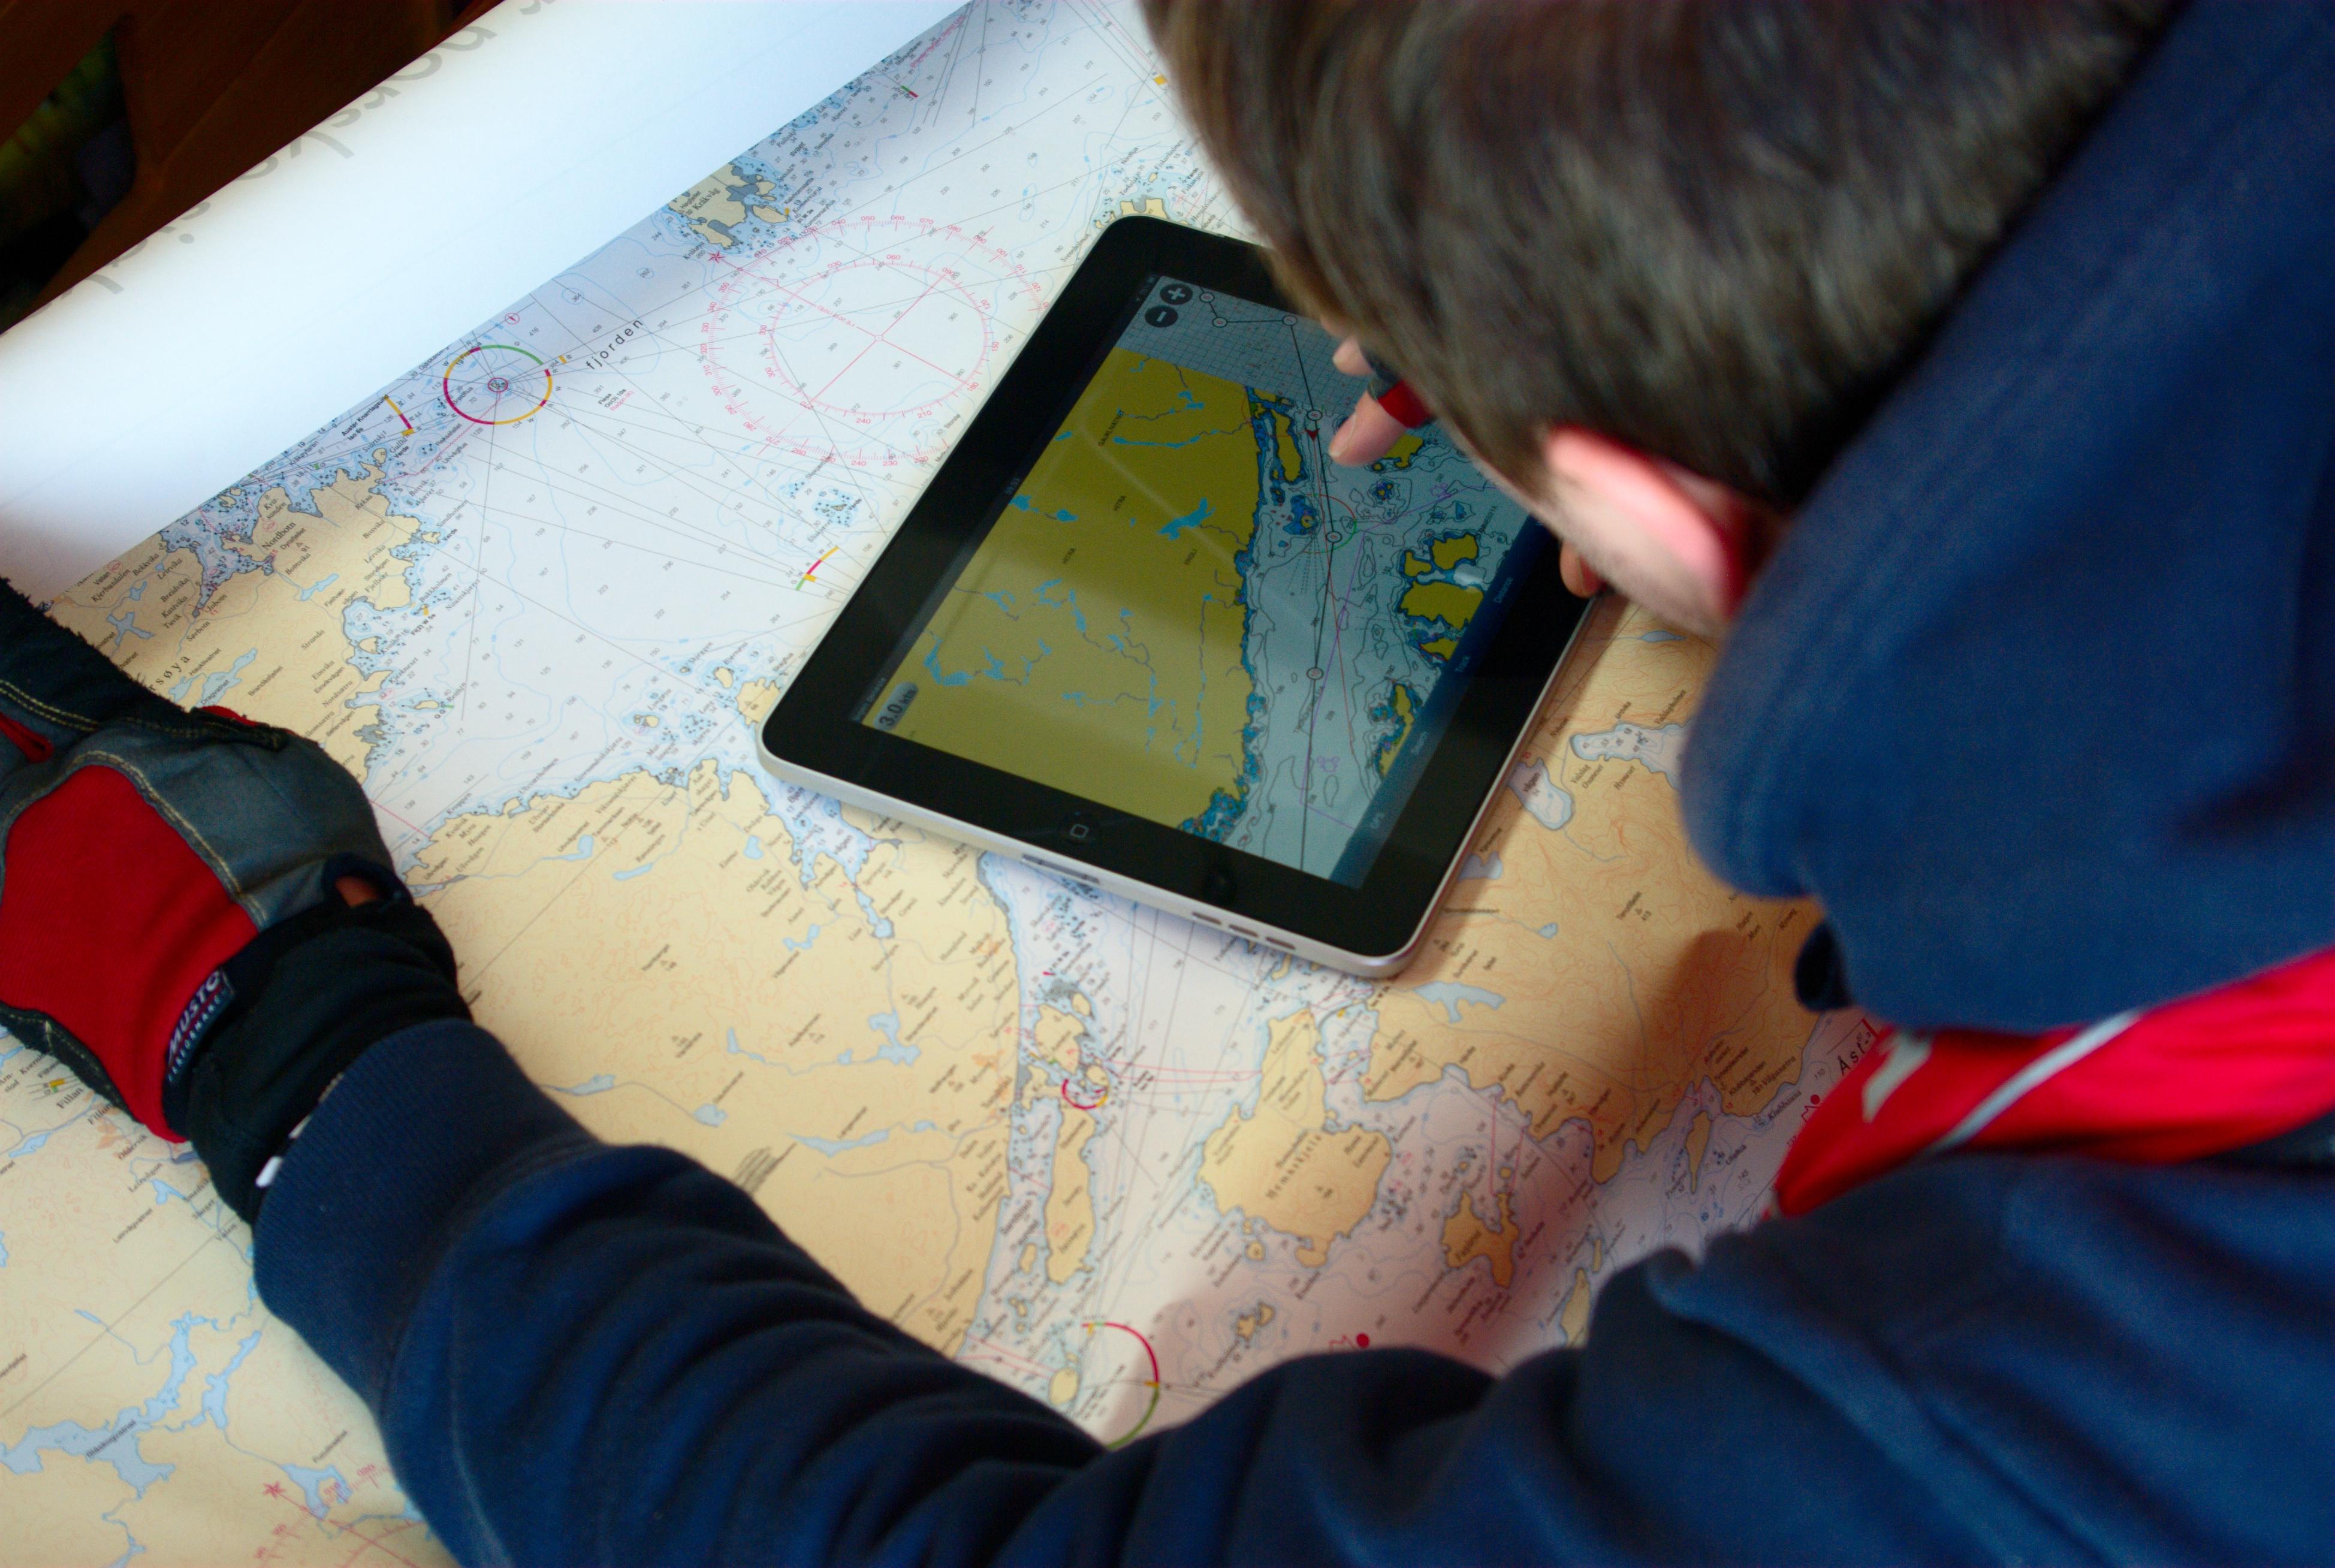 iPad koster forbausende lite når man sammenligner med vanlige kartplottere og sjøkart.